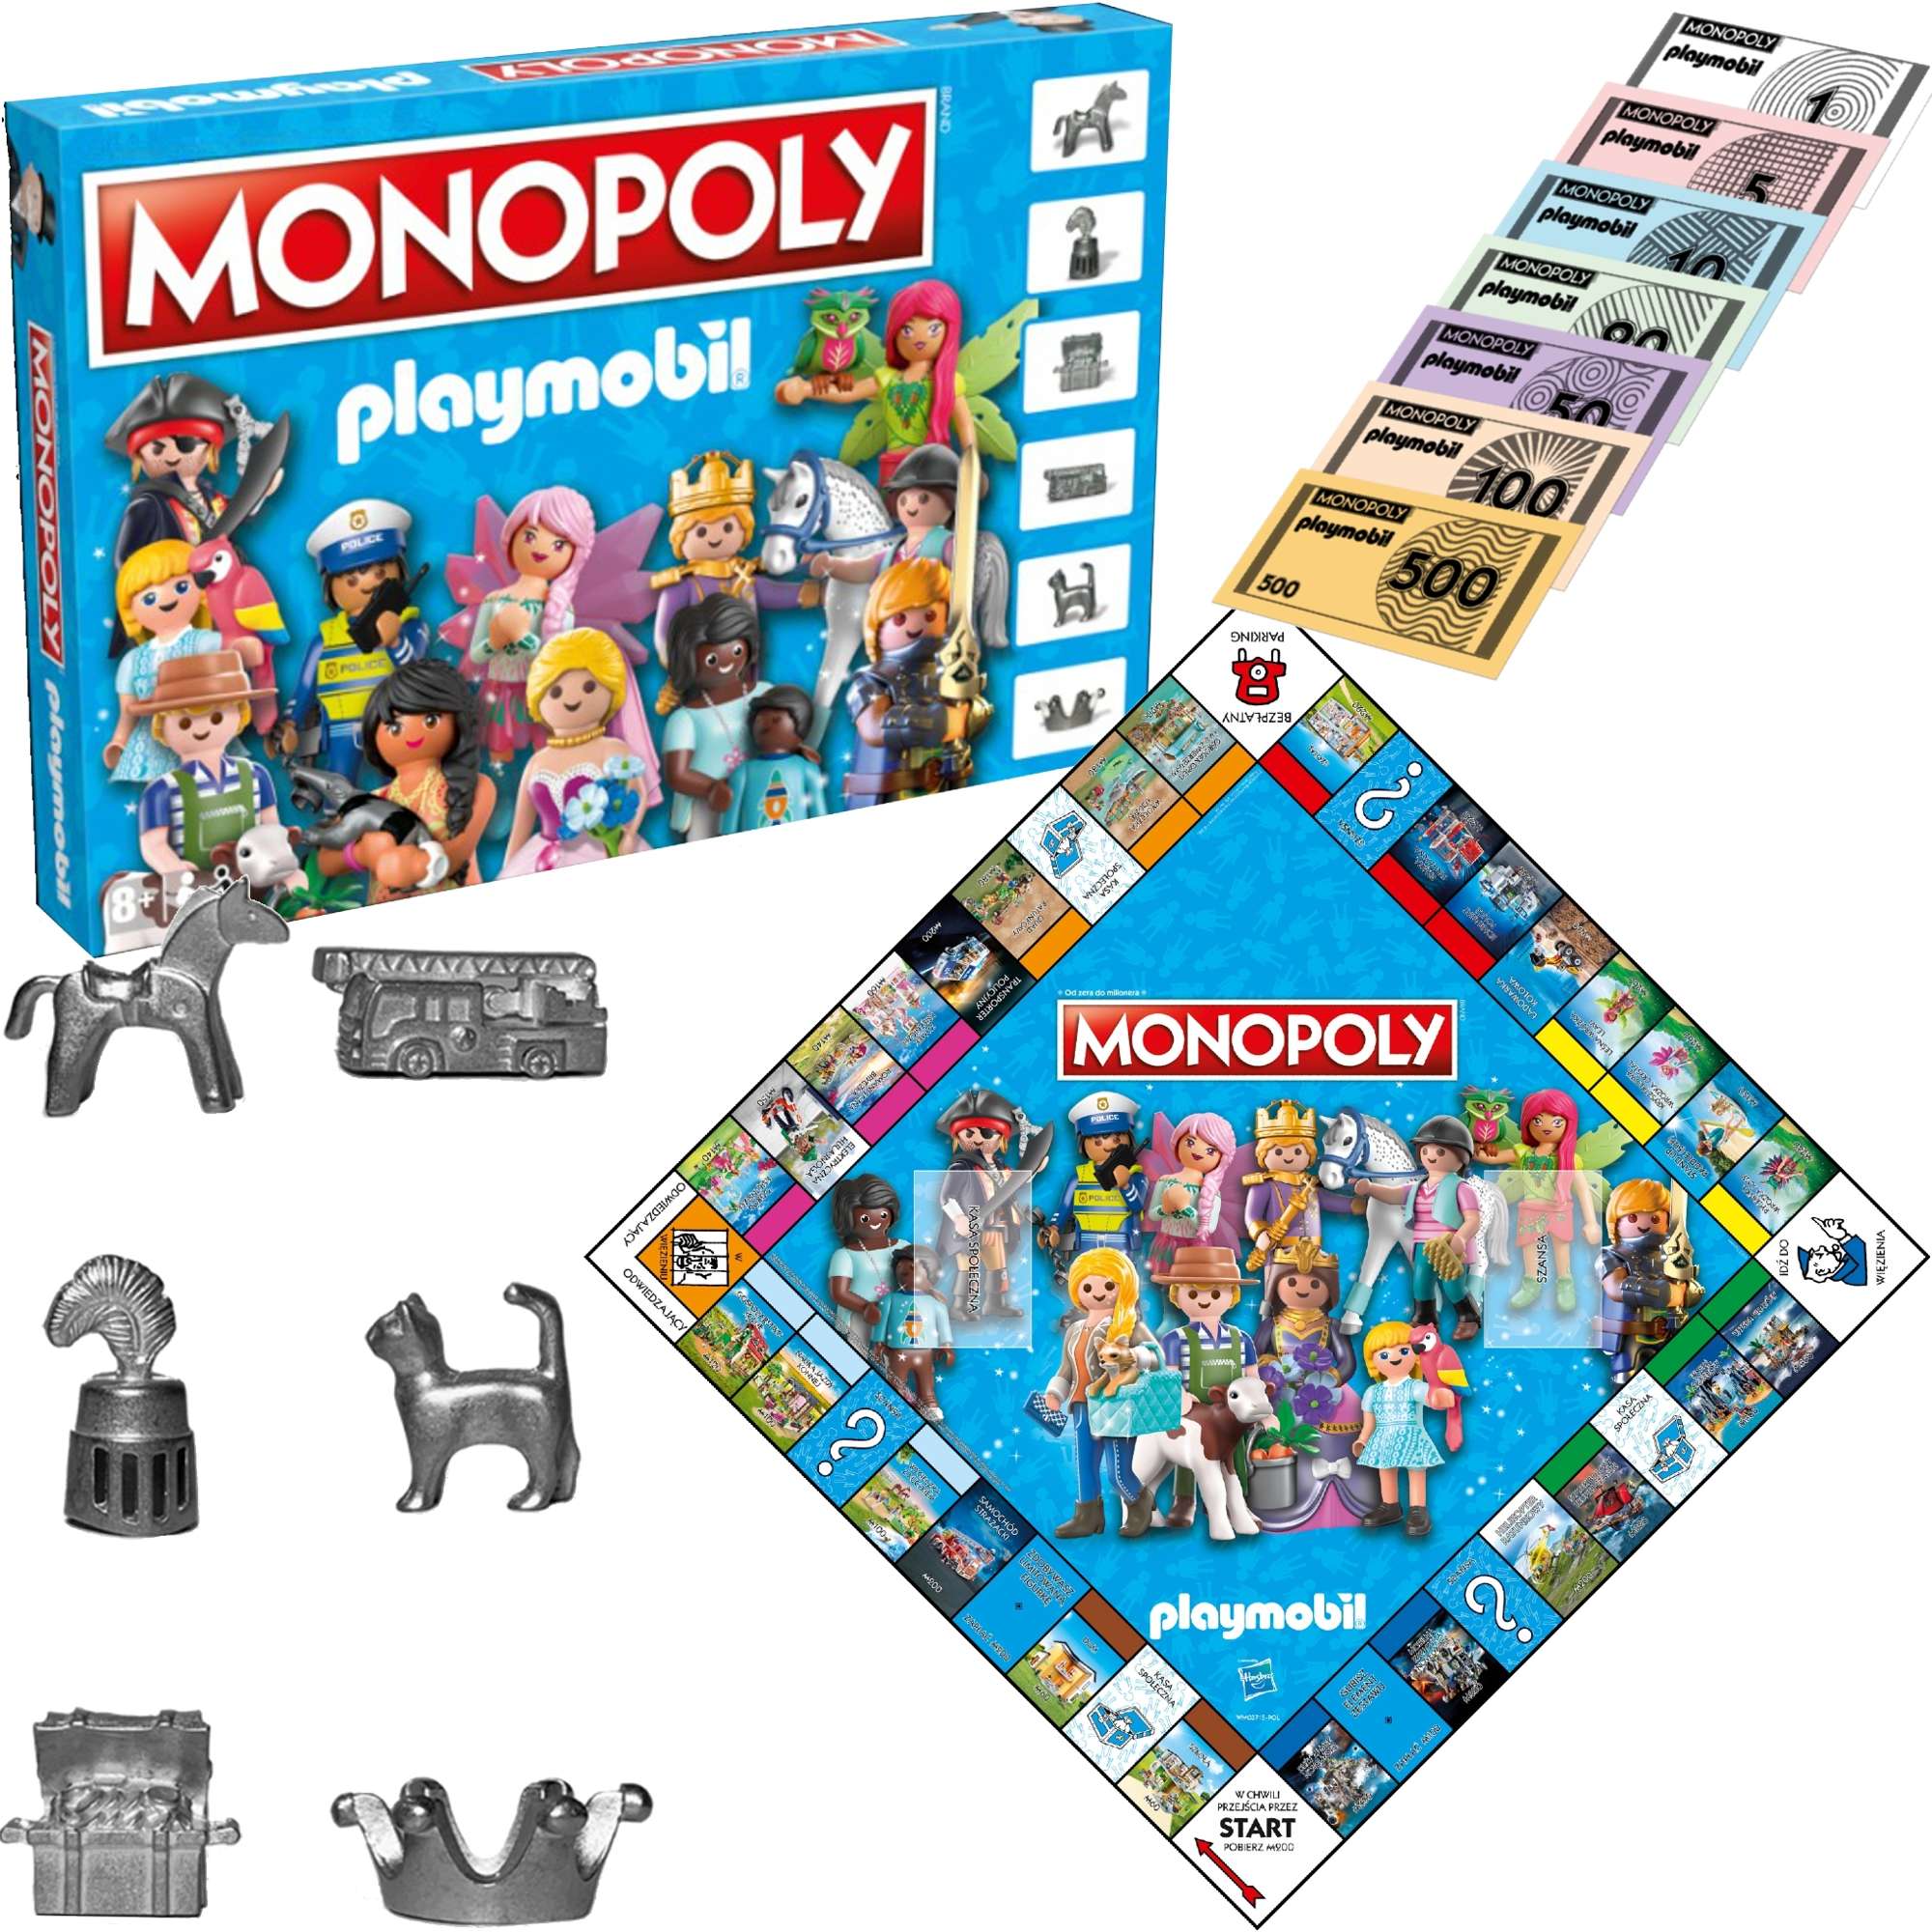 Monopoly Towarzyska Gra Planszowa Rodzinna Playmobil wersja polska